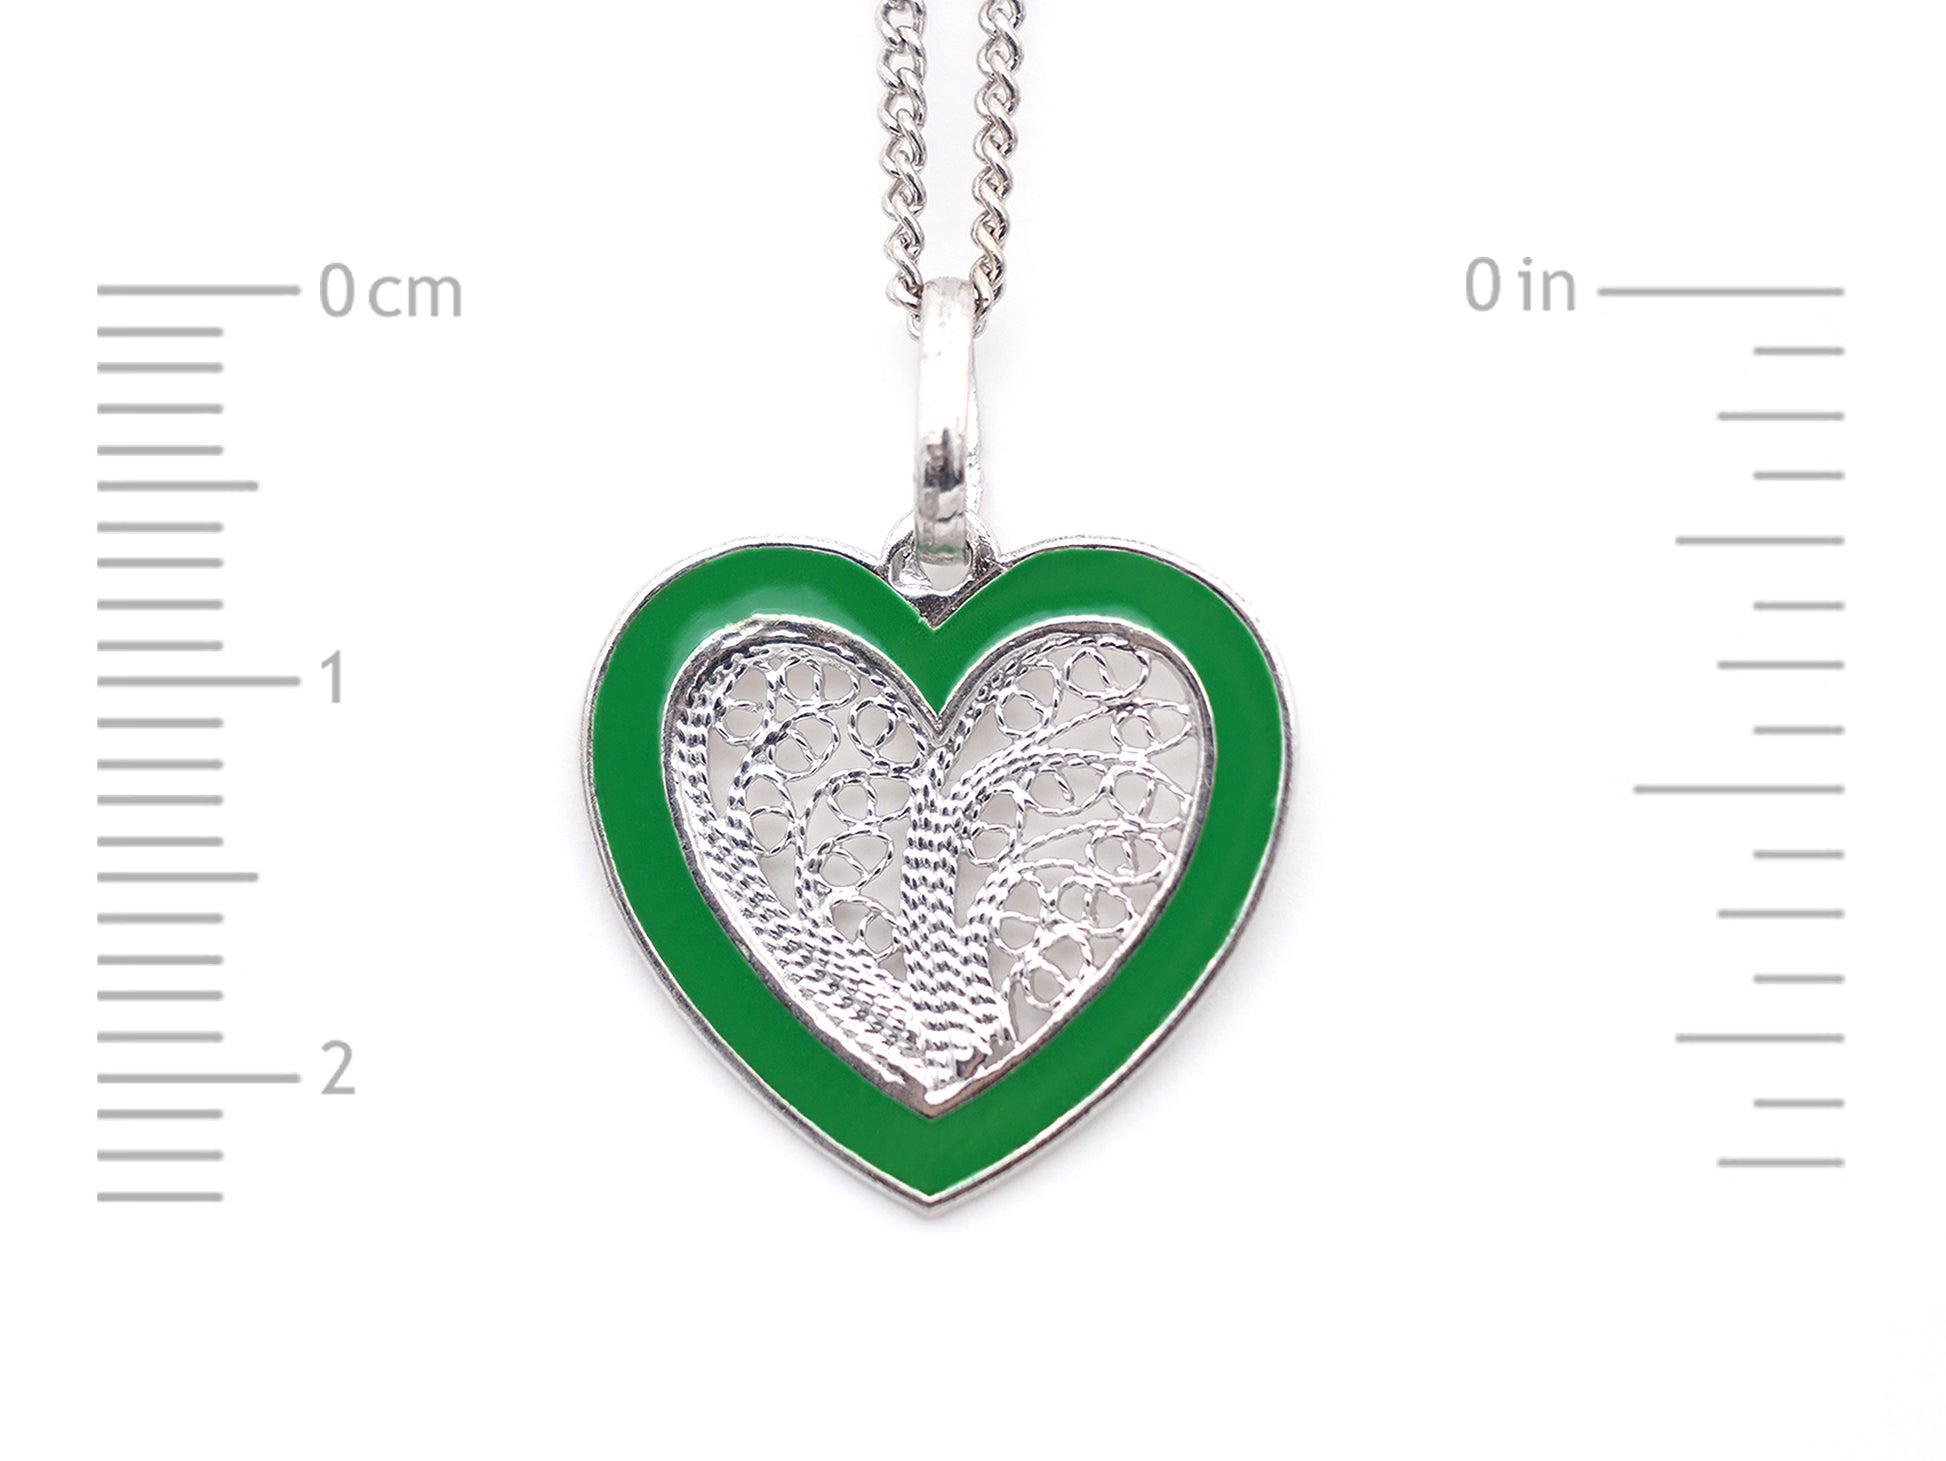 Colar Coração Médio Esmalte Verde, Filigrana Portuguesa, Prata de Lei 925 - Medidas coração